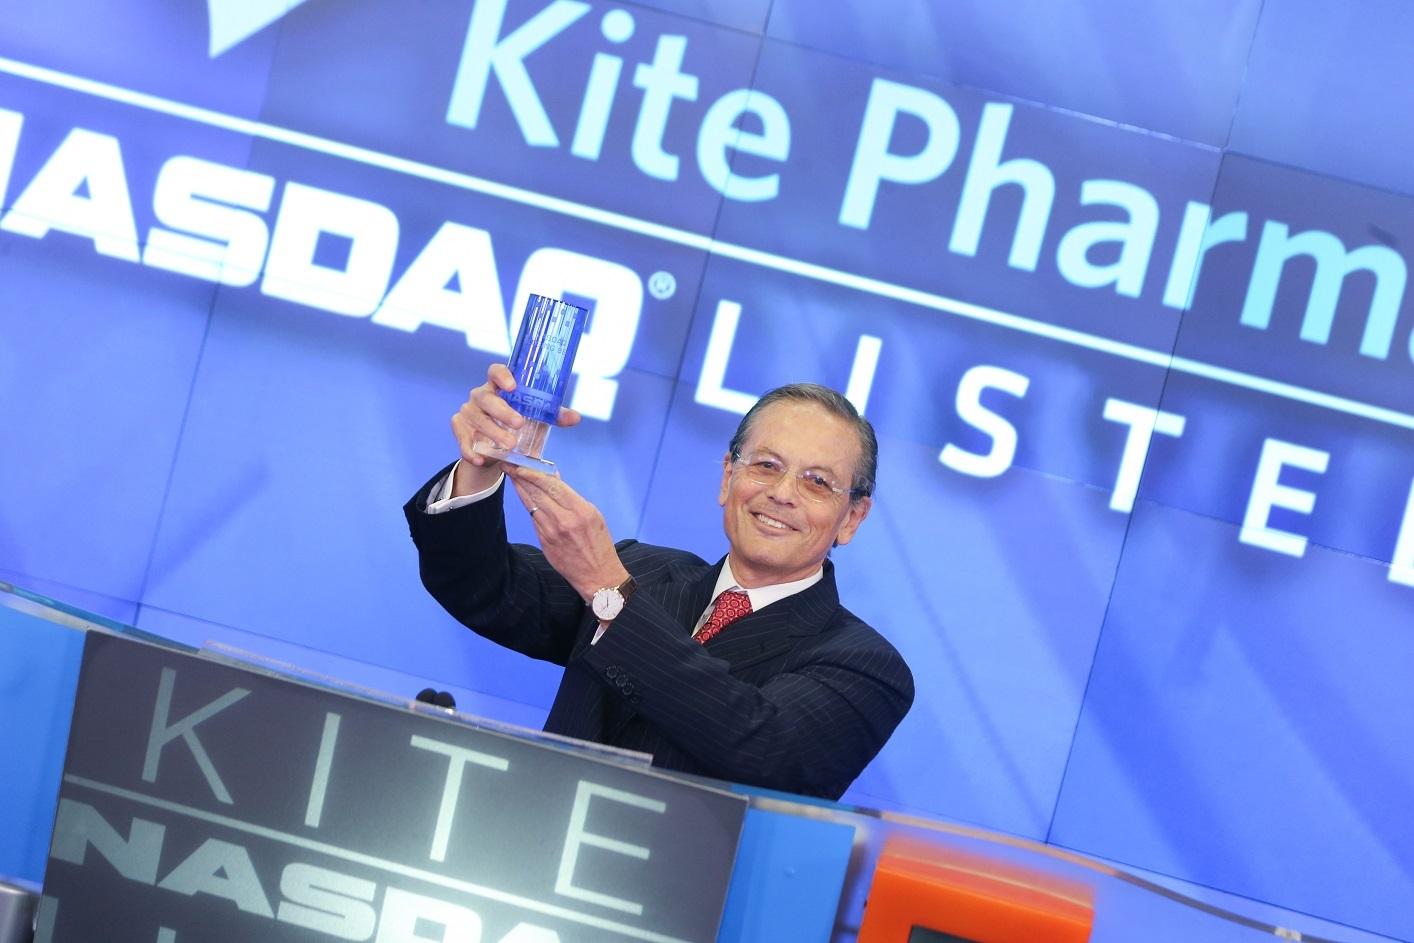 kite pharma jobs